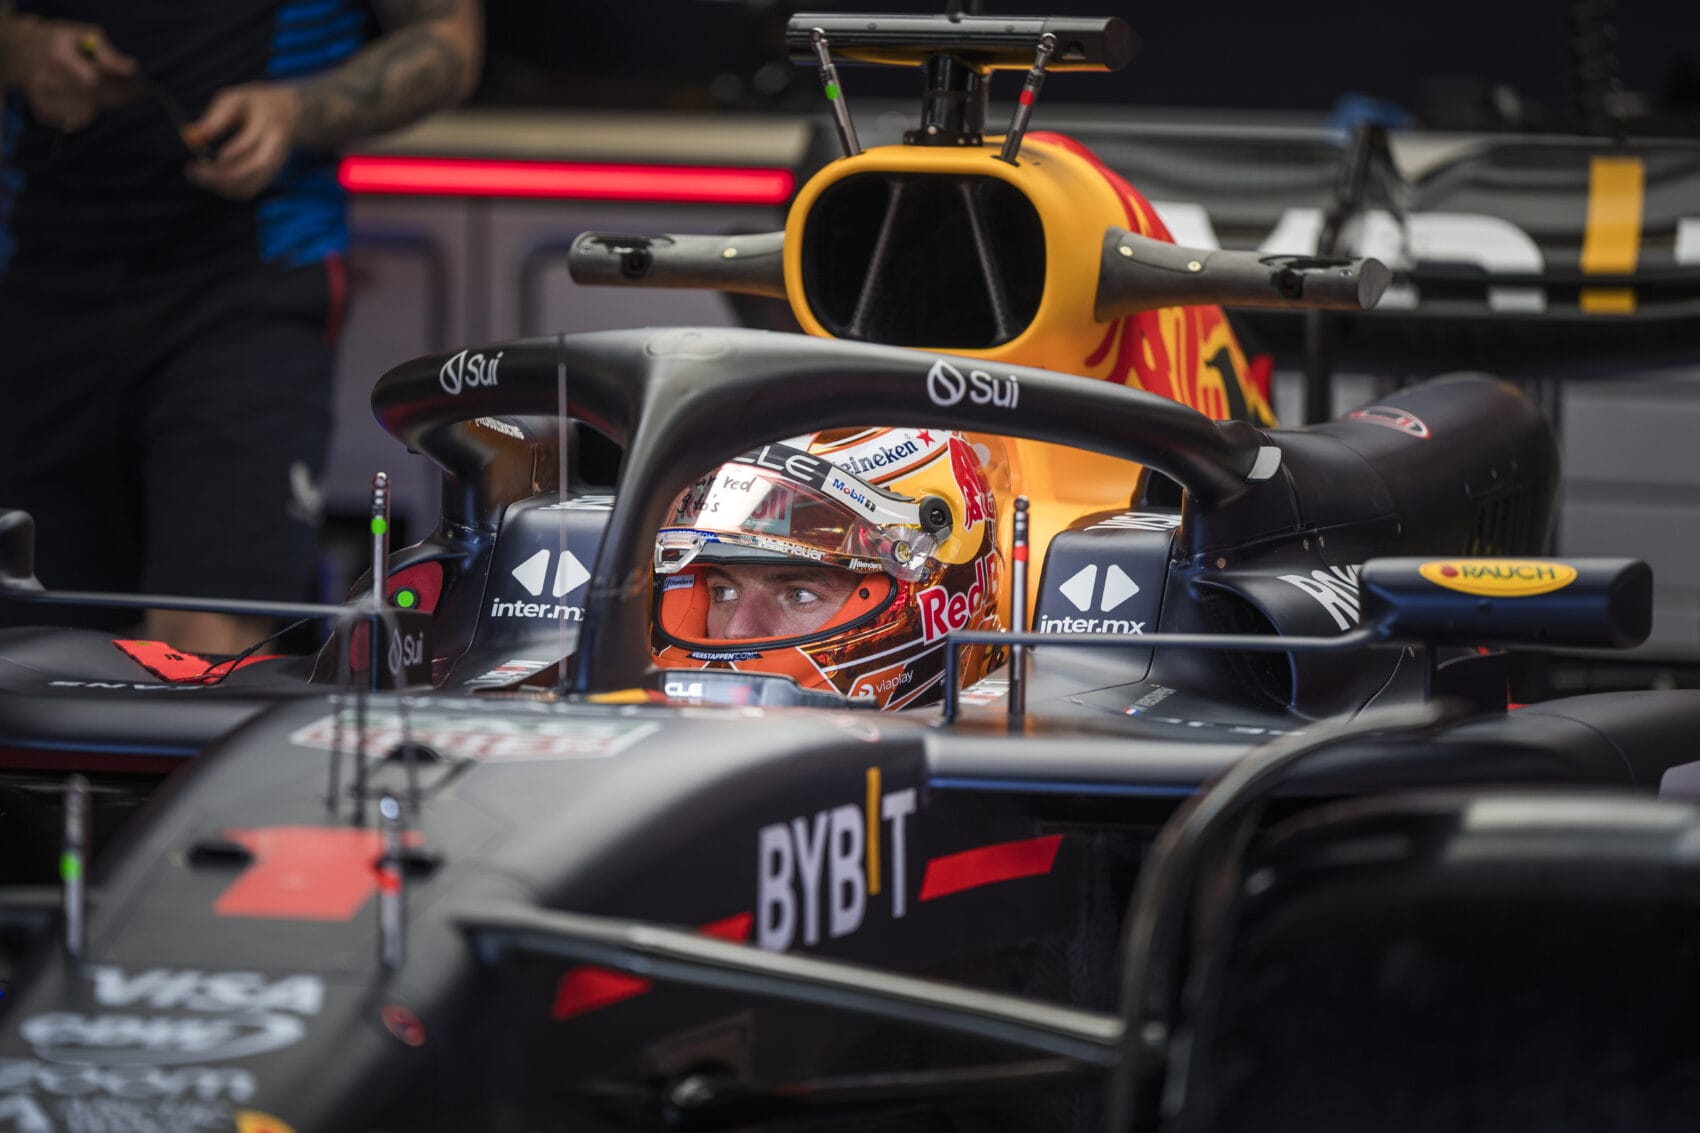 A technikai fejlődés átírta a versenyt: Verstappen kimagasló sebességgel uralt